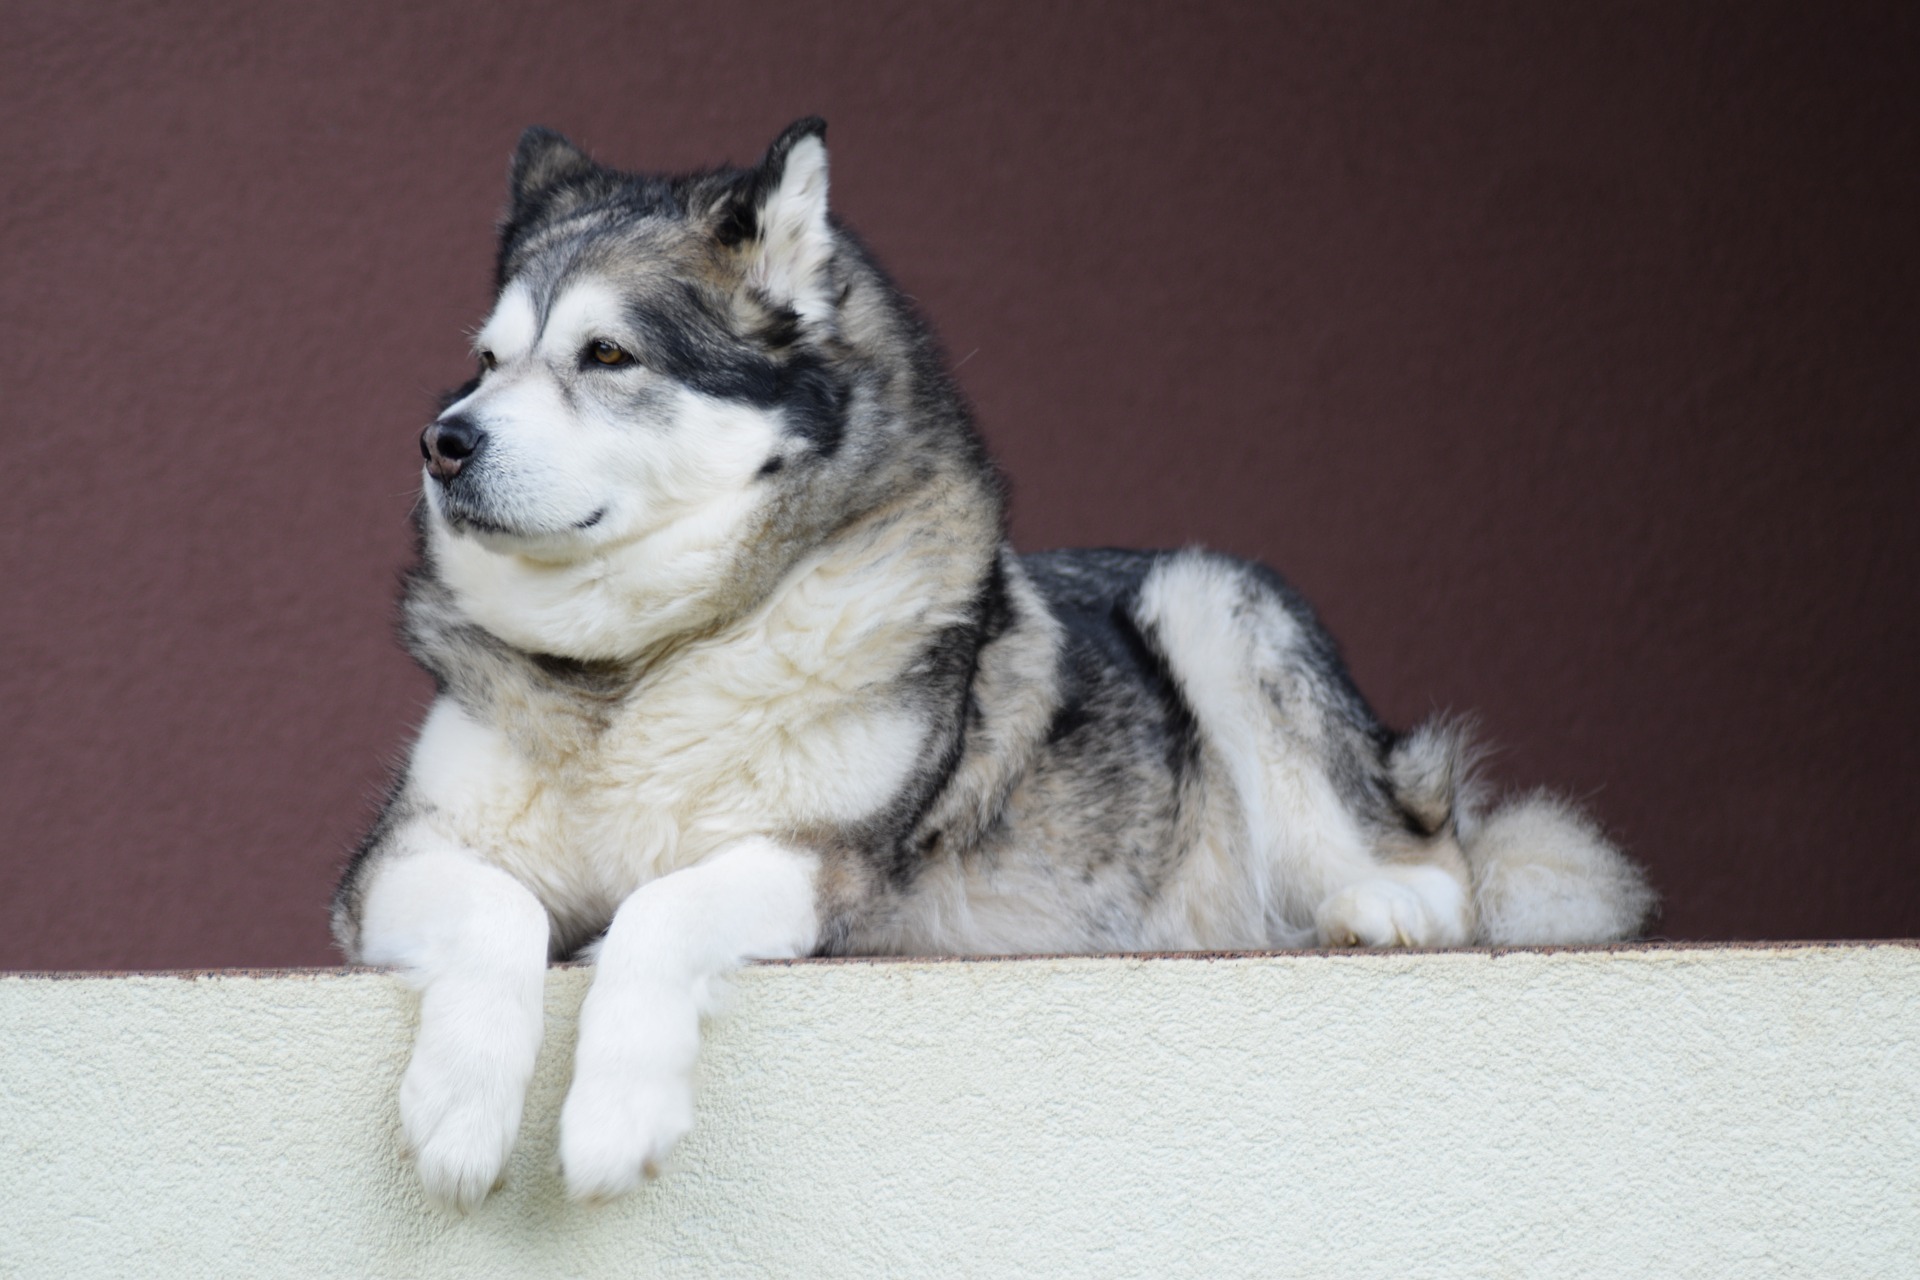 Spotlight on a working dog breed: Alaskan Malamute